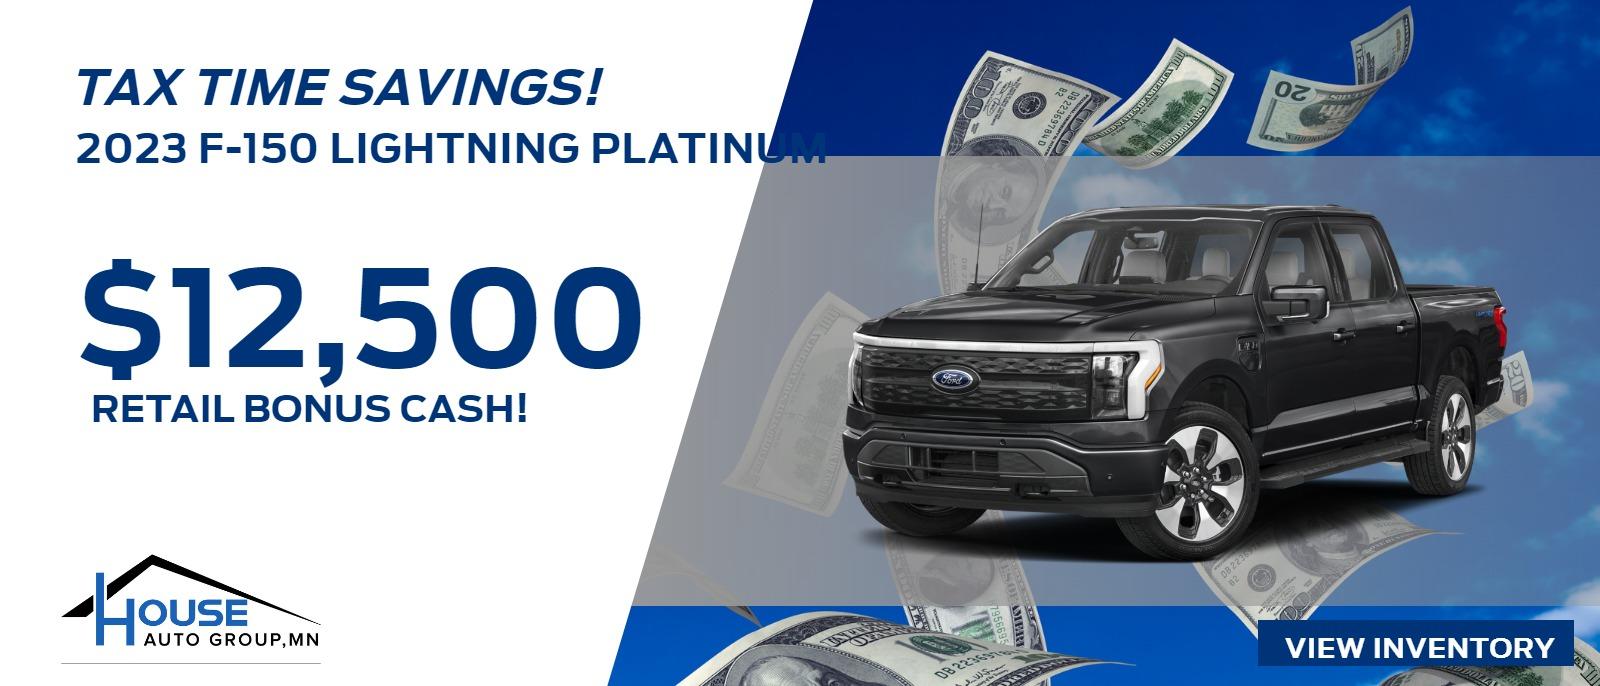 2023 F-150 Lightning Platinum - $12,500 Retail Bonus Cash!